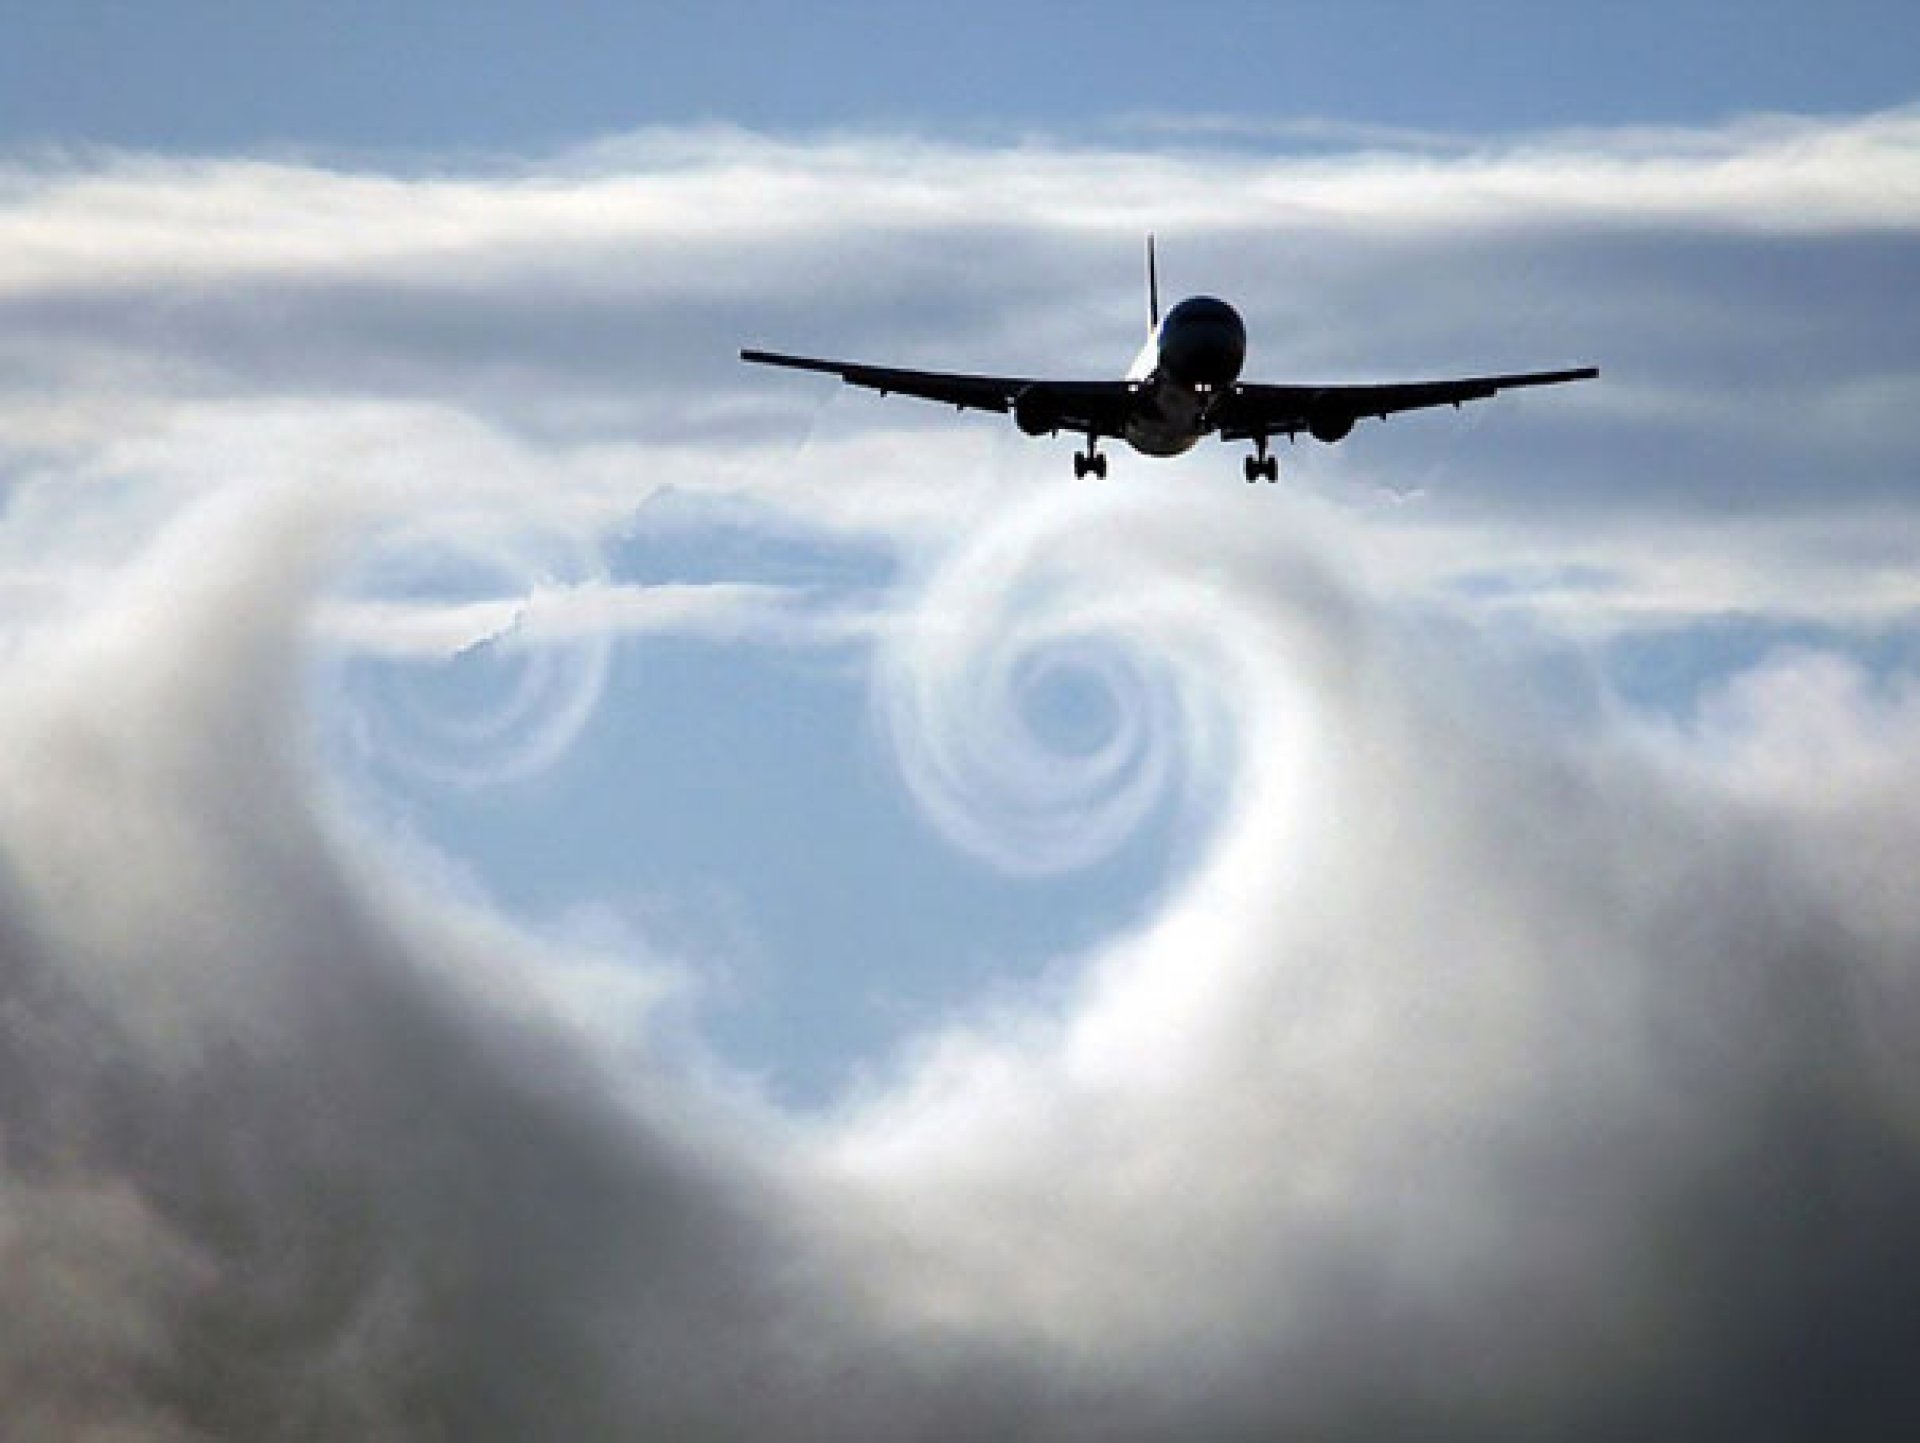 Стремительный полет самолета. Самолет в небе. Cfvjktn DF yt,t. Самолет в облаках. Пролетающий самолет.